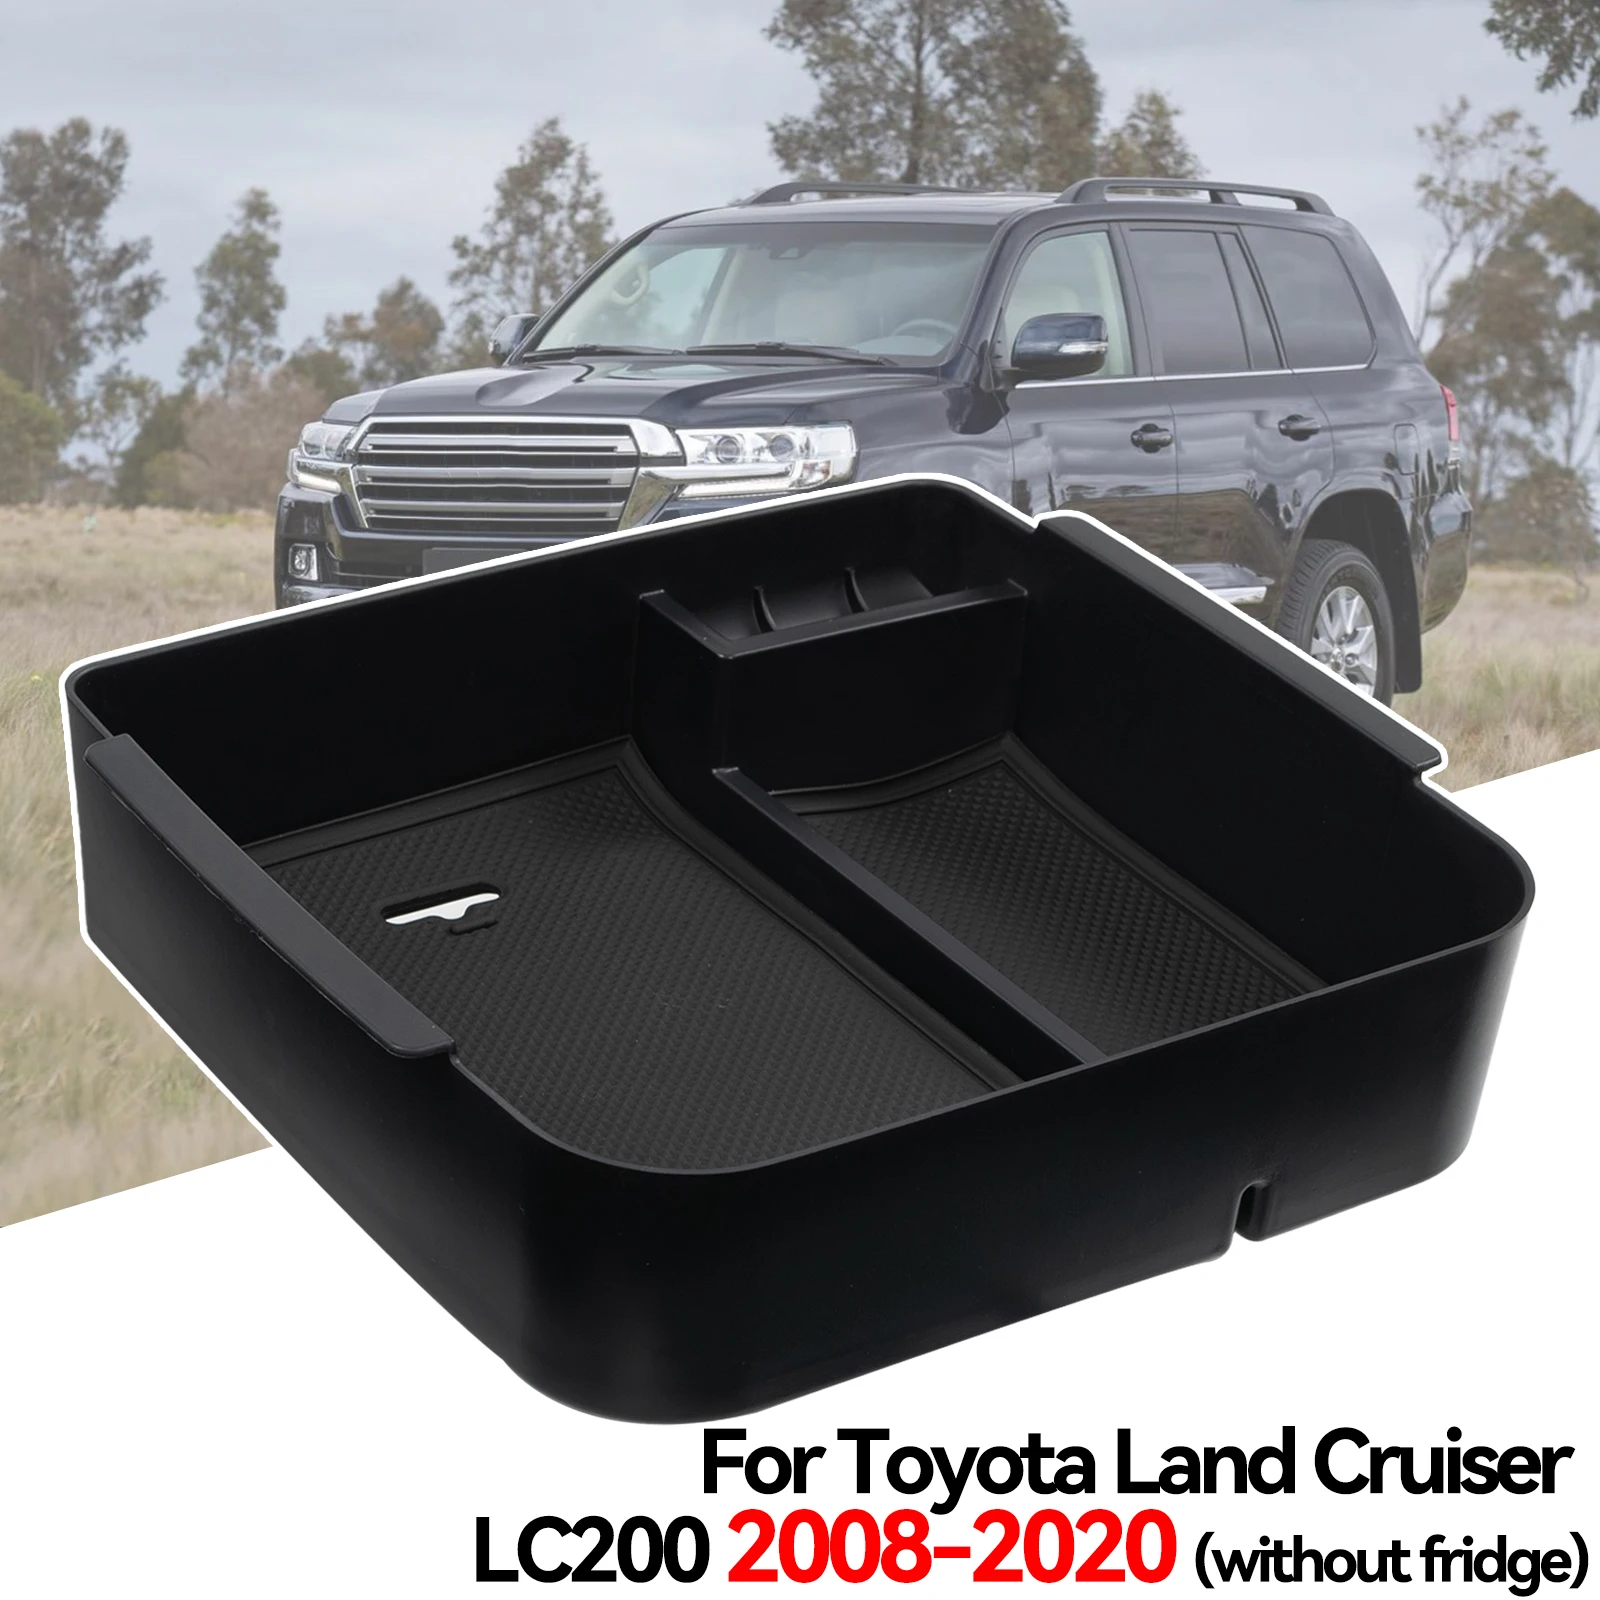 

Центральный подлокотник коробка для хранения центральная консоль Органайзер поддон держатель для Toyota Land Cruiser LC200 J200 2008 - 2018 2019 2020